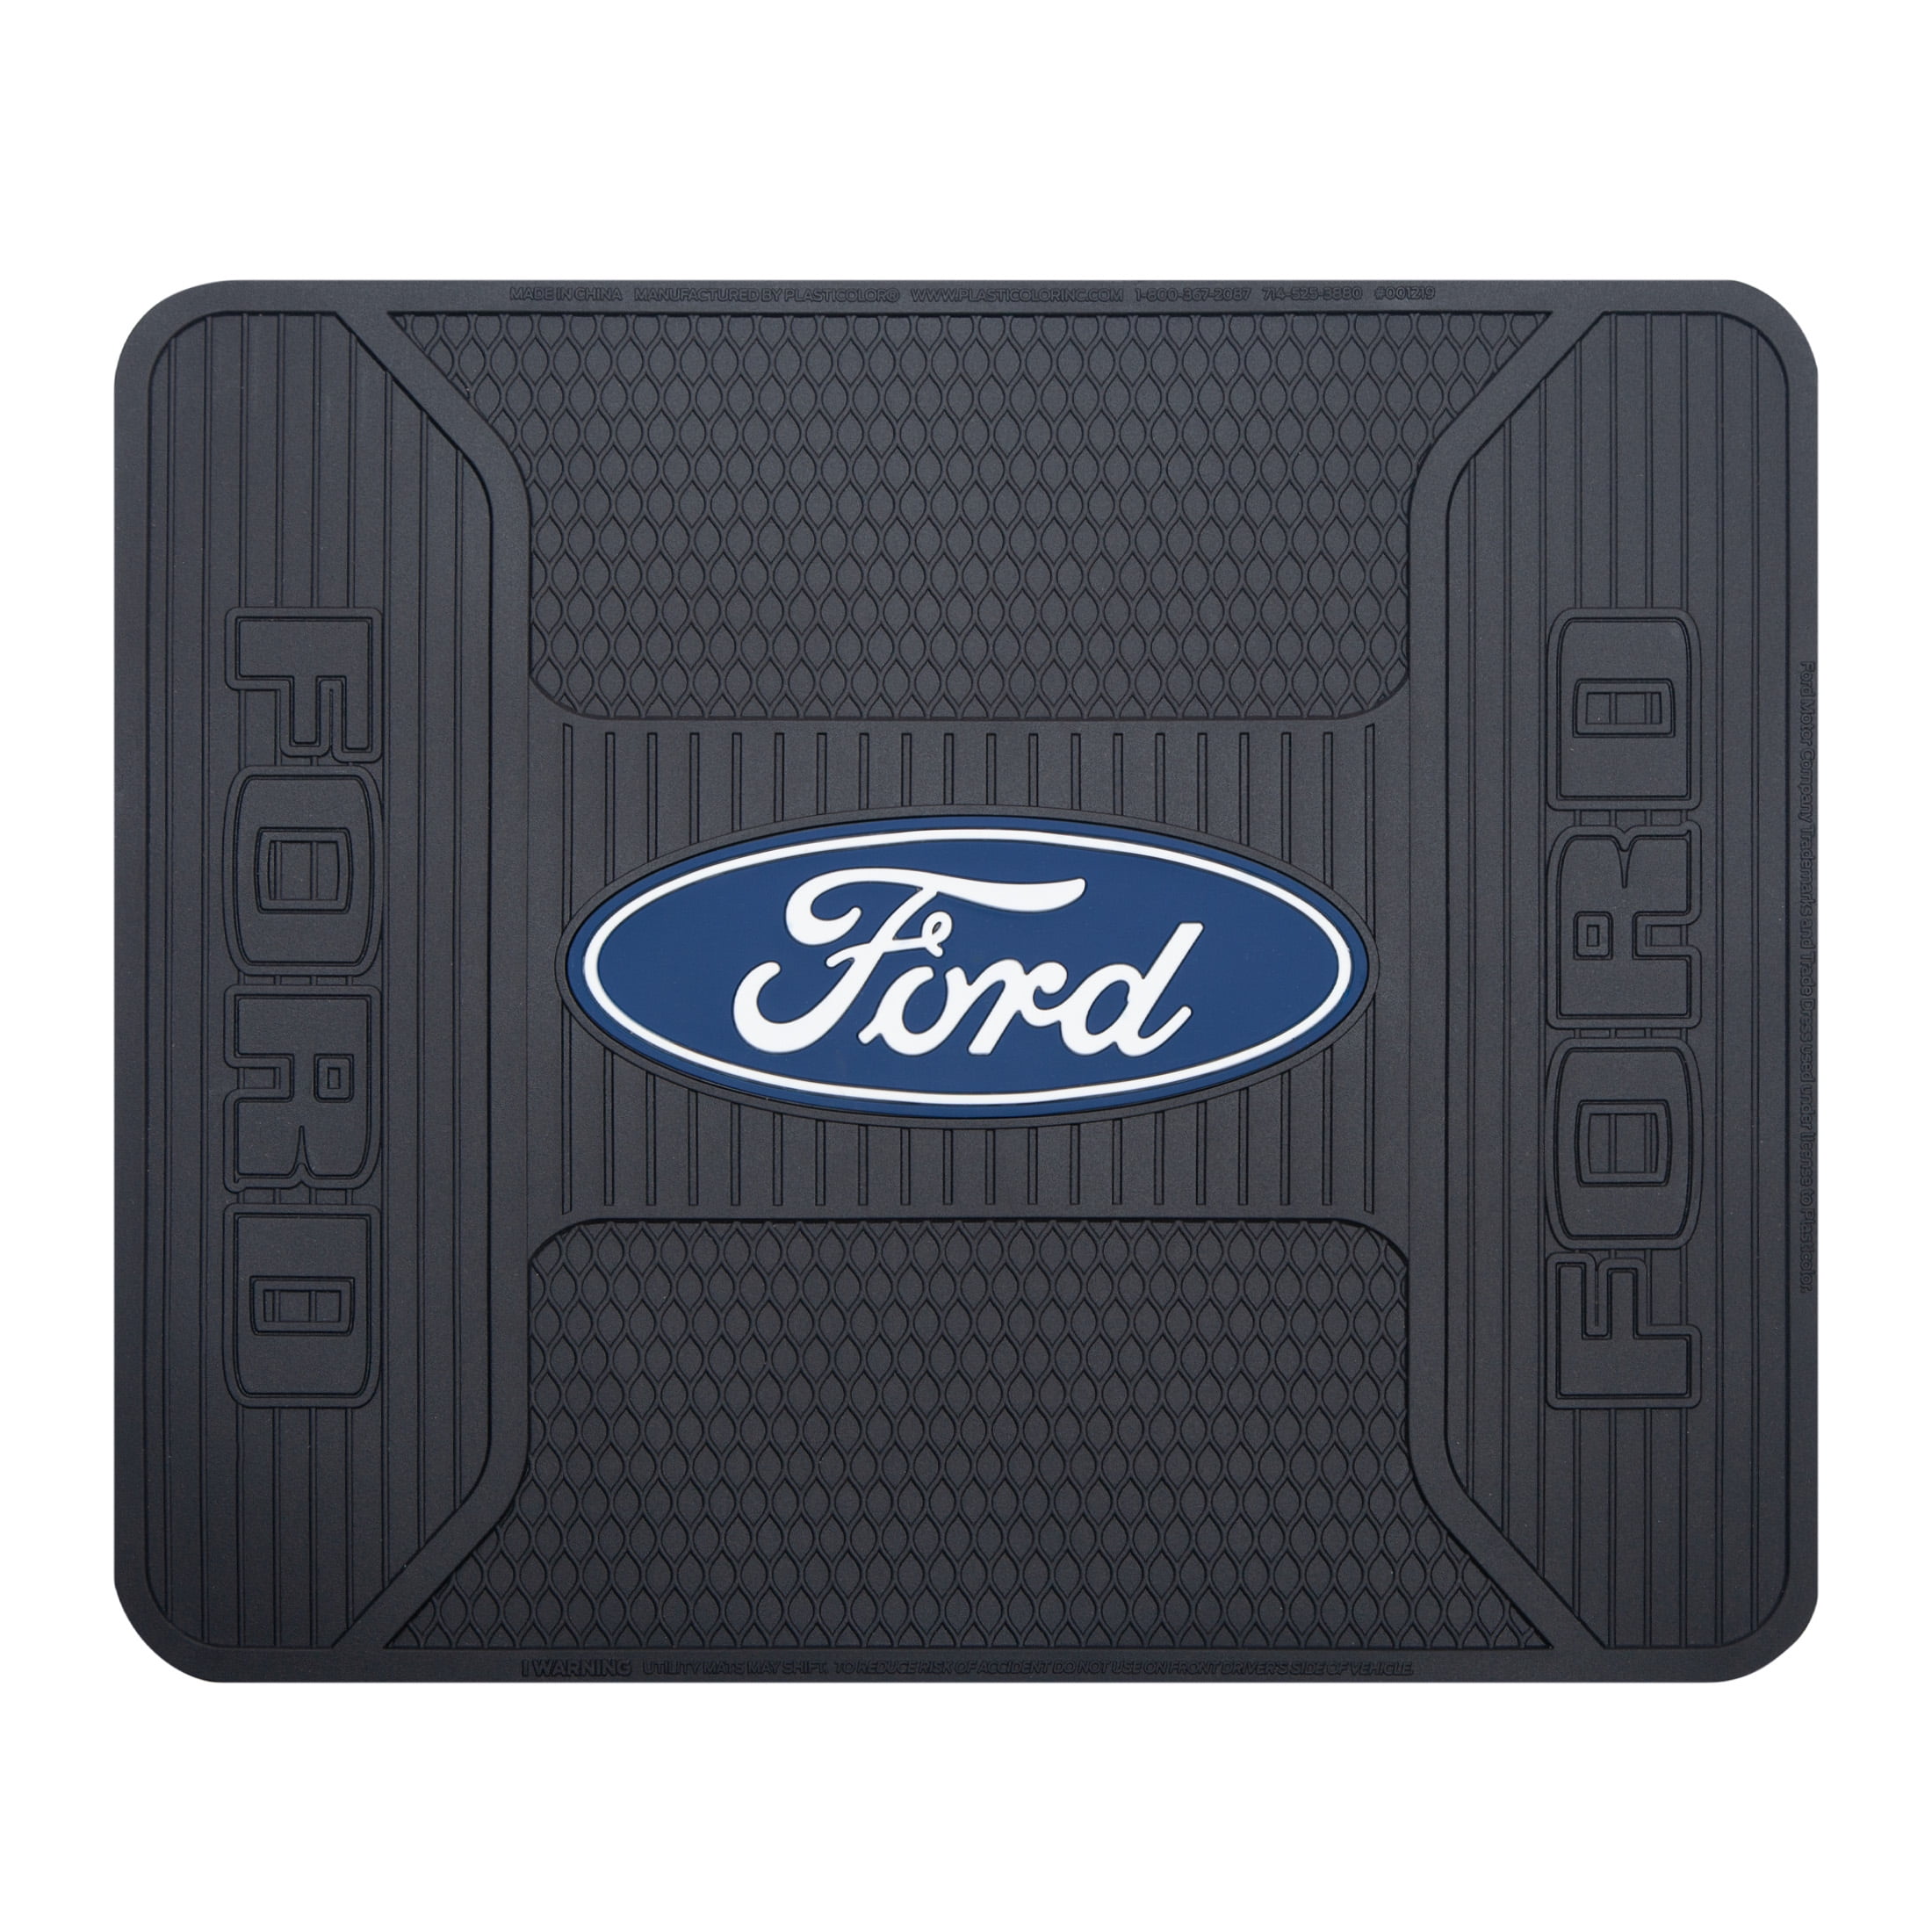 Ford Plum Oval Logo Mat TRUNK MAT CARGO MAT RUG Rubber Mat NEW 